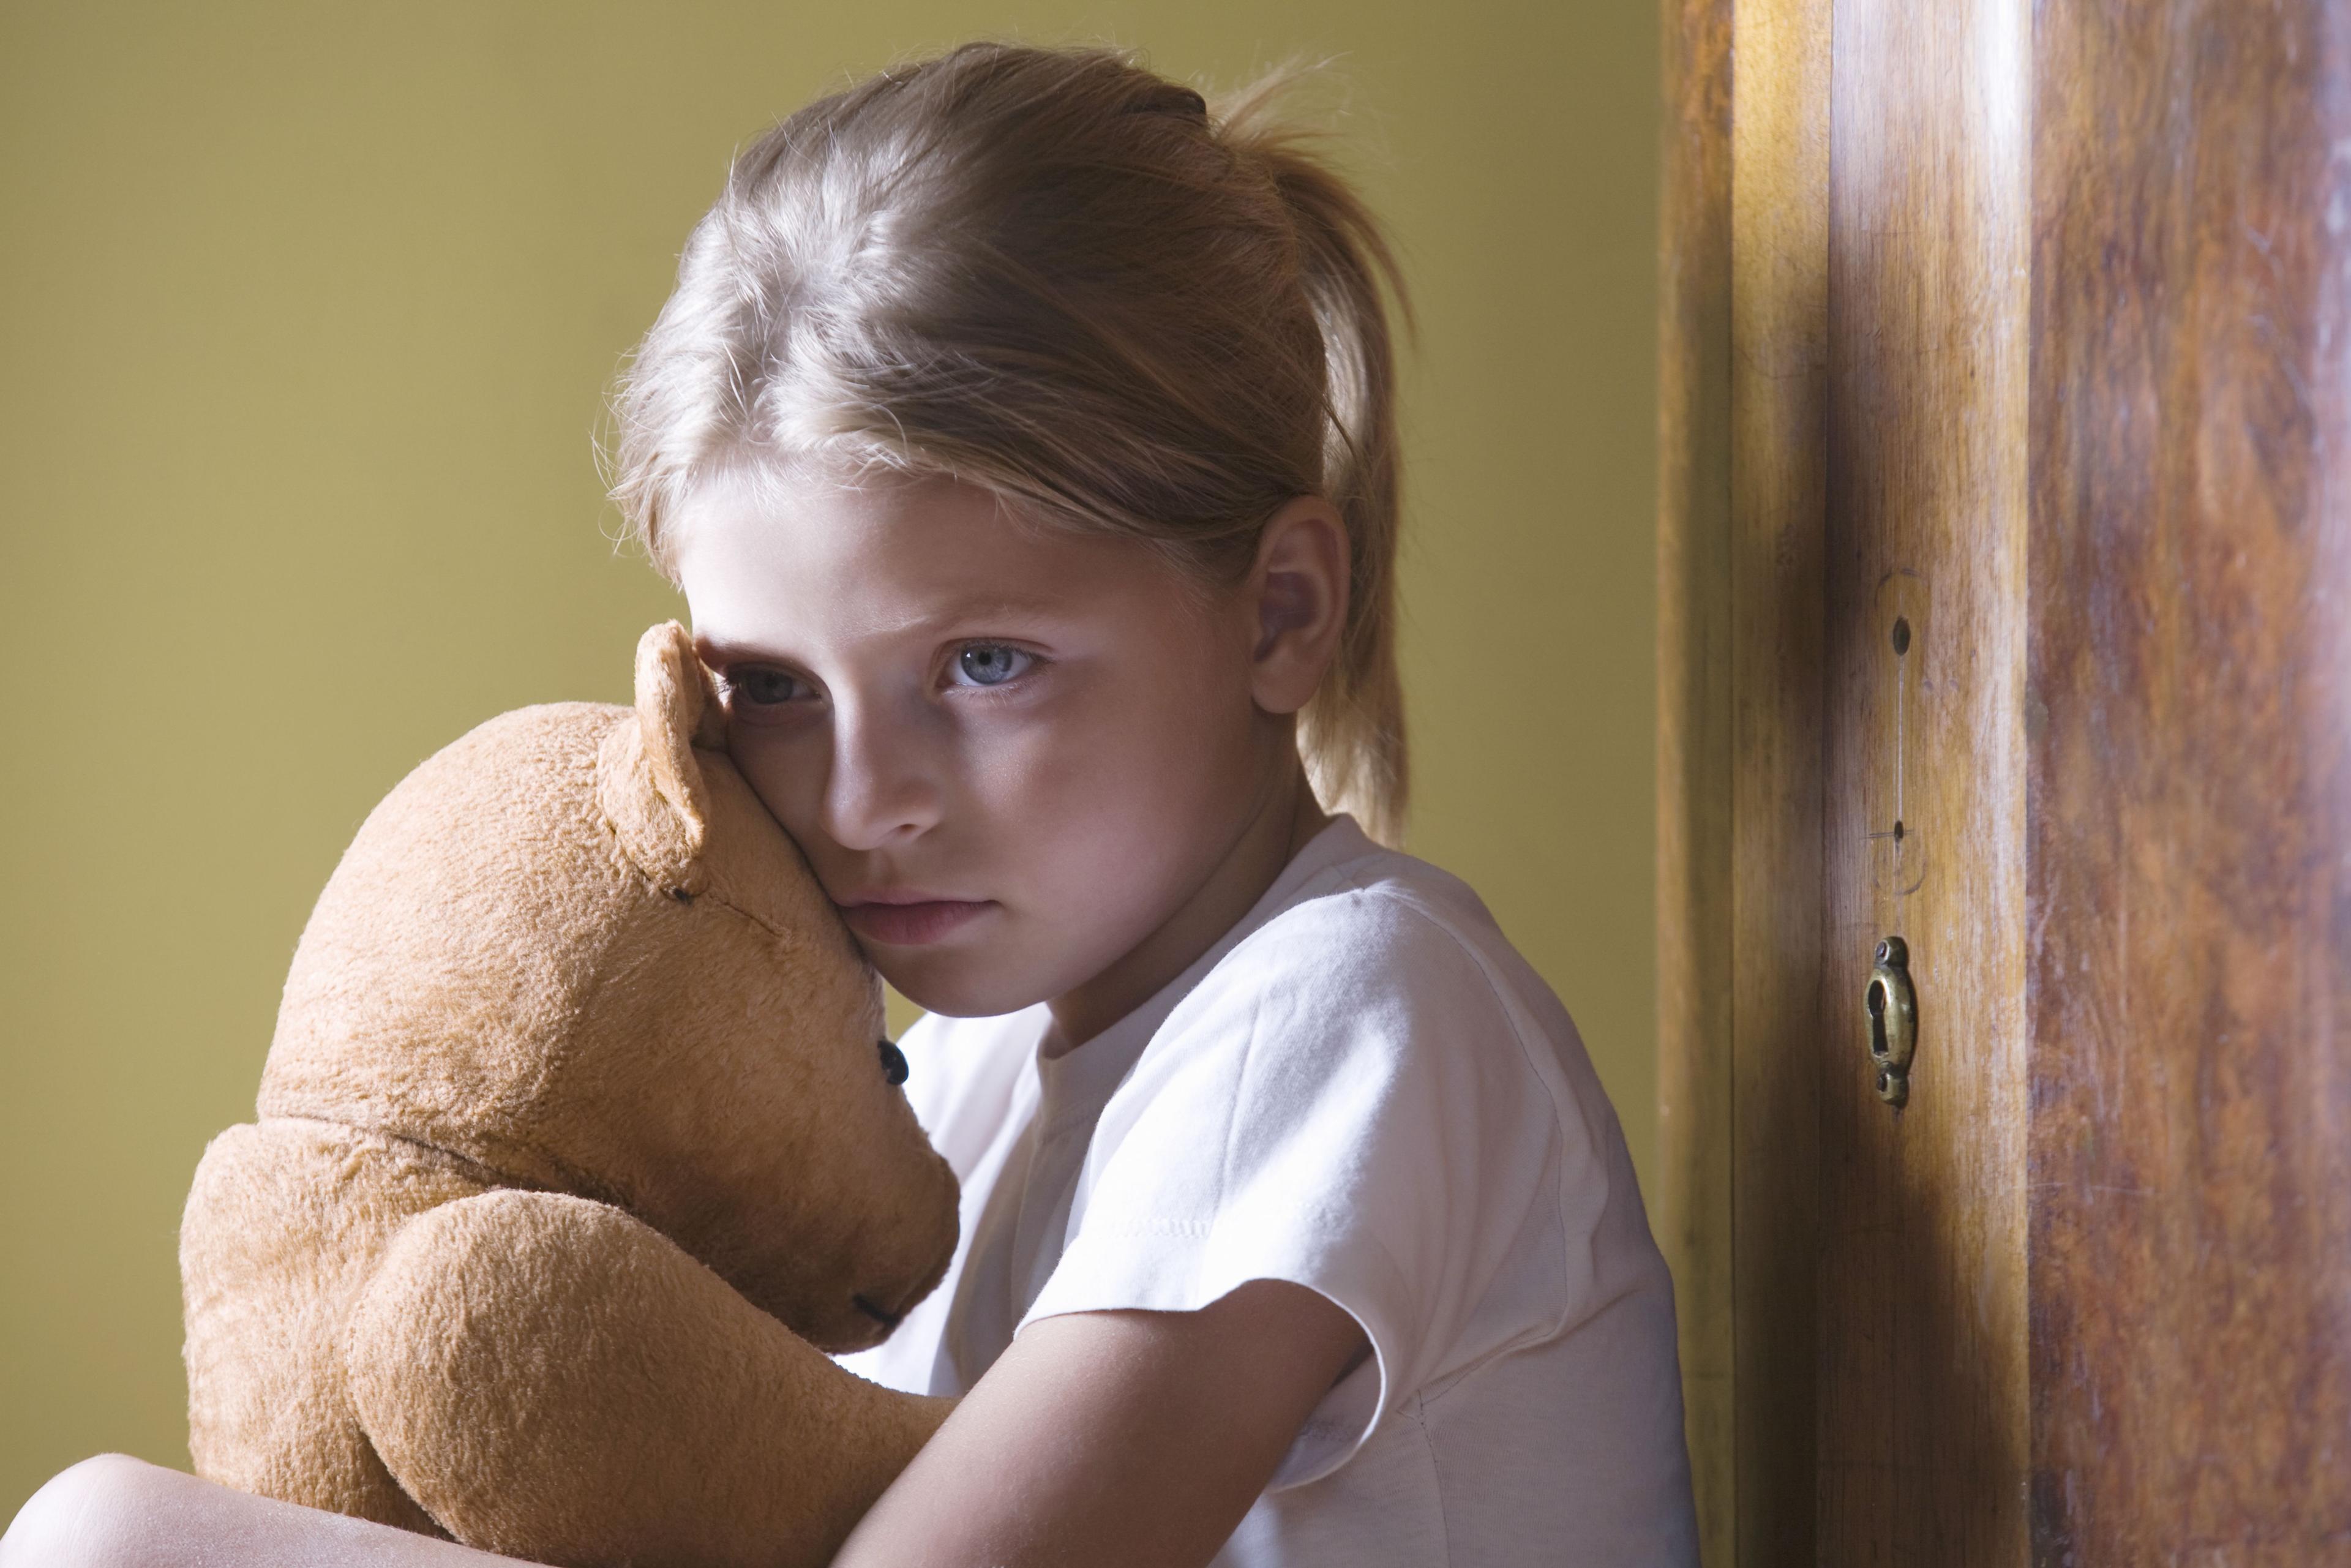 Sad girl is holding a teddy bear.